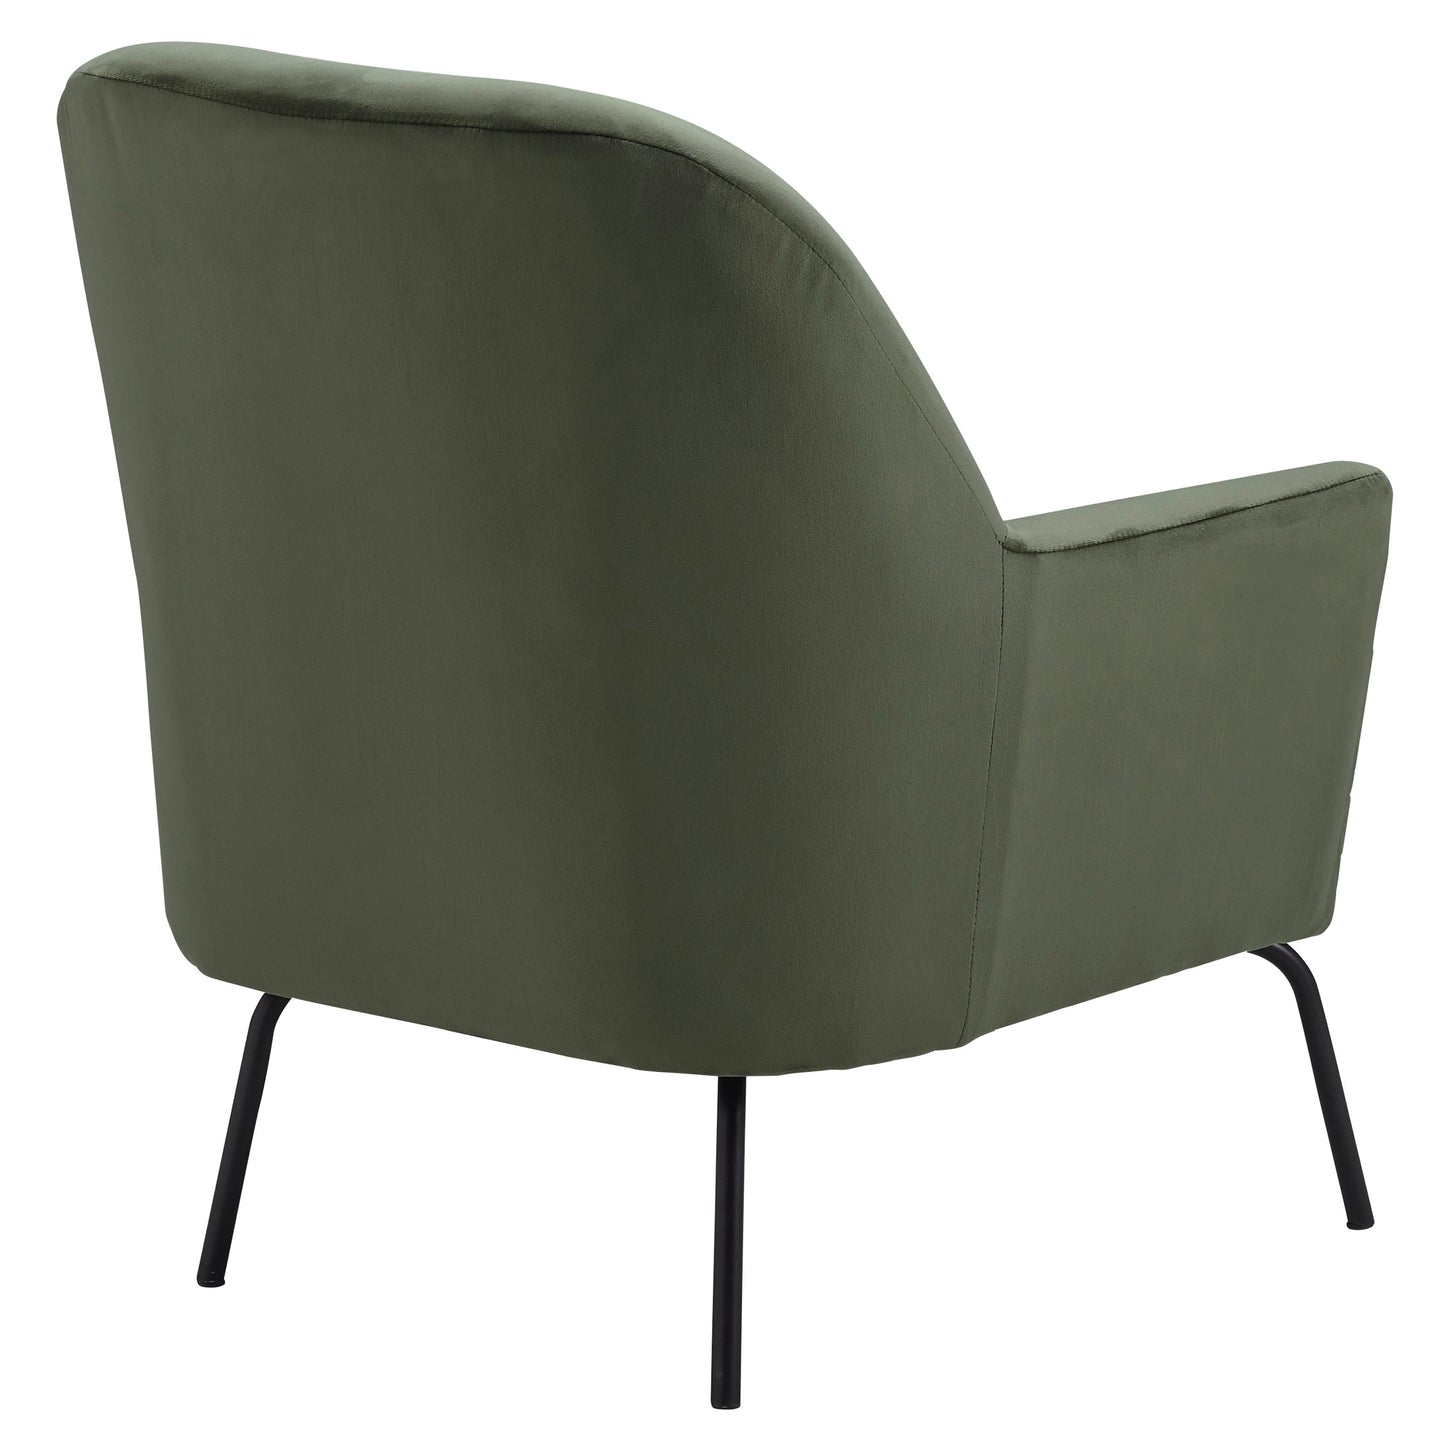 Dericka Moss Accent Chair | A3000235